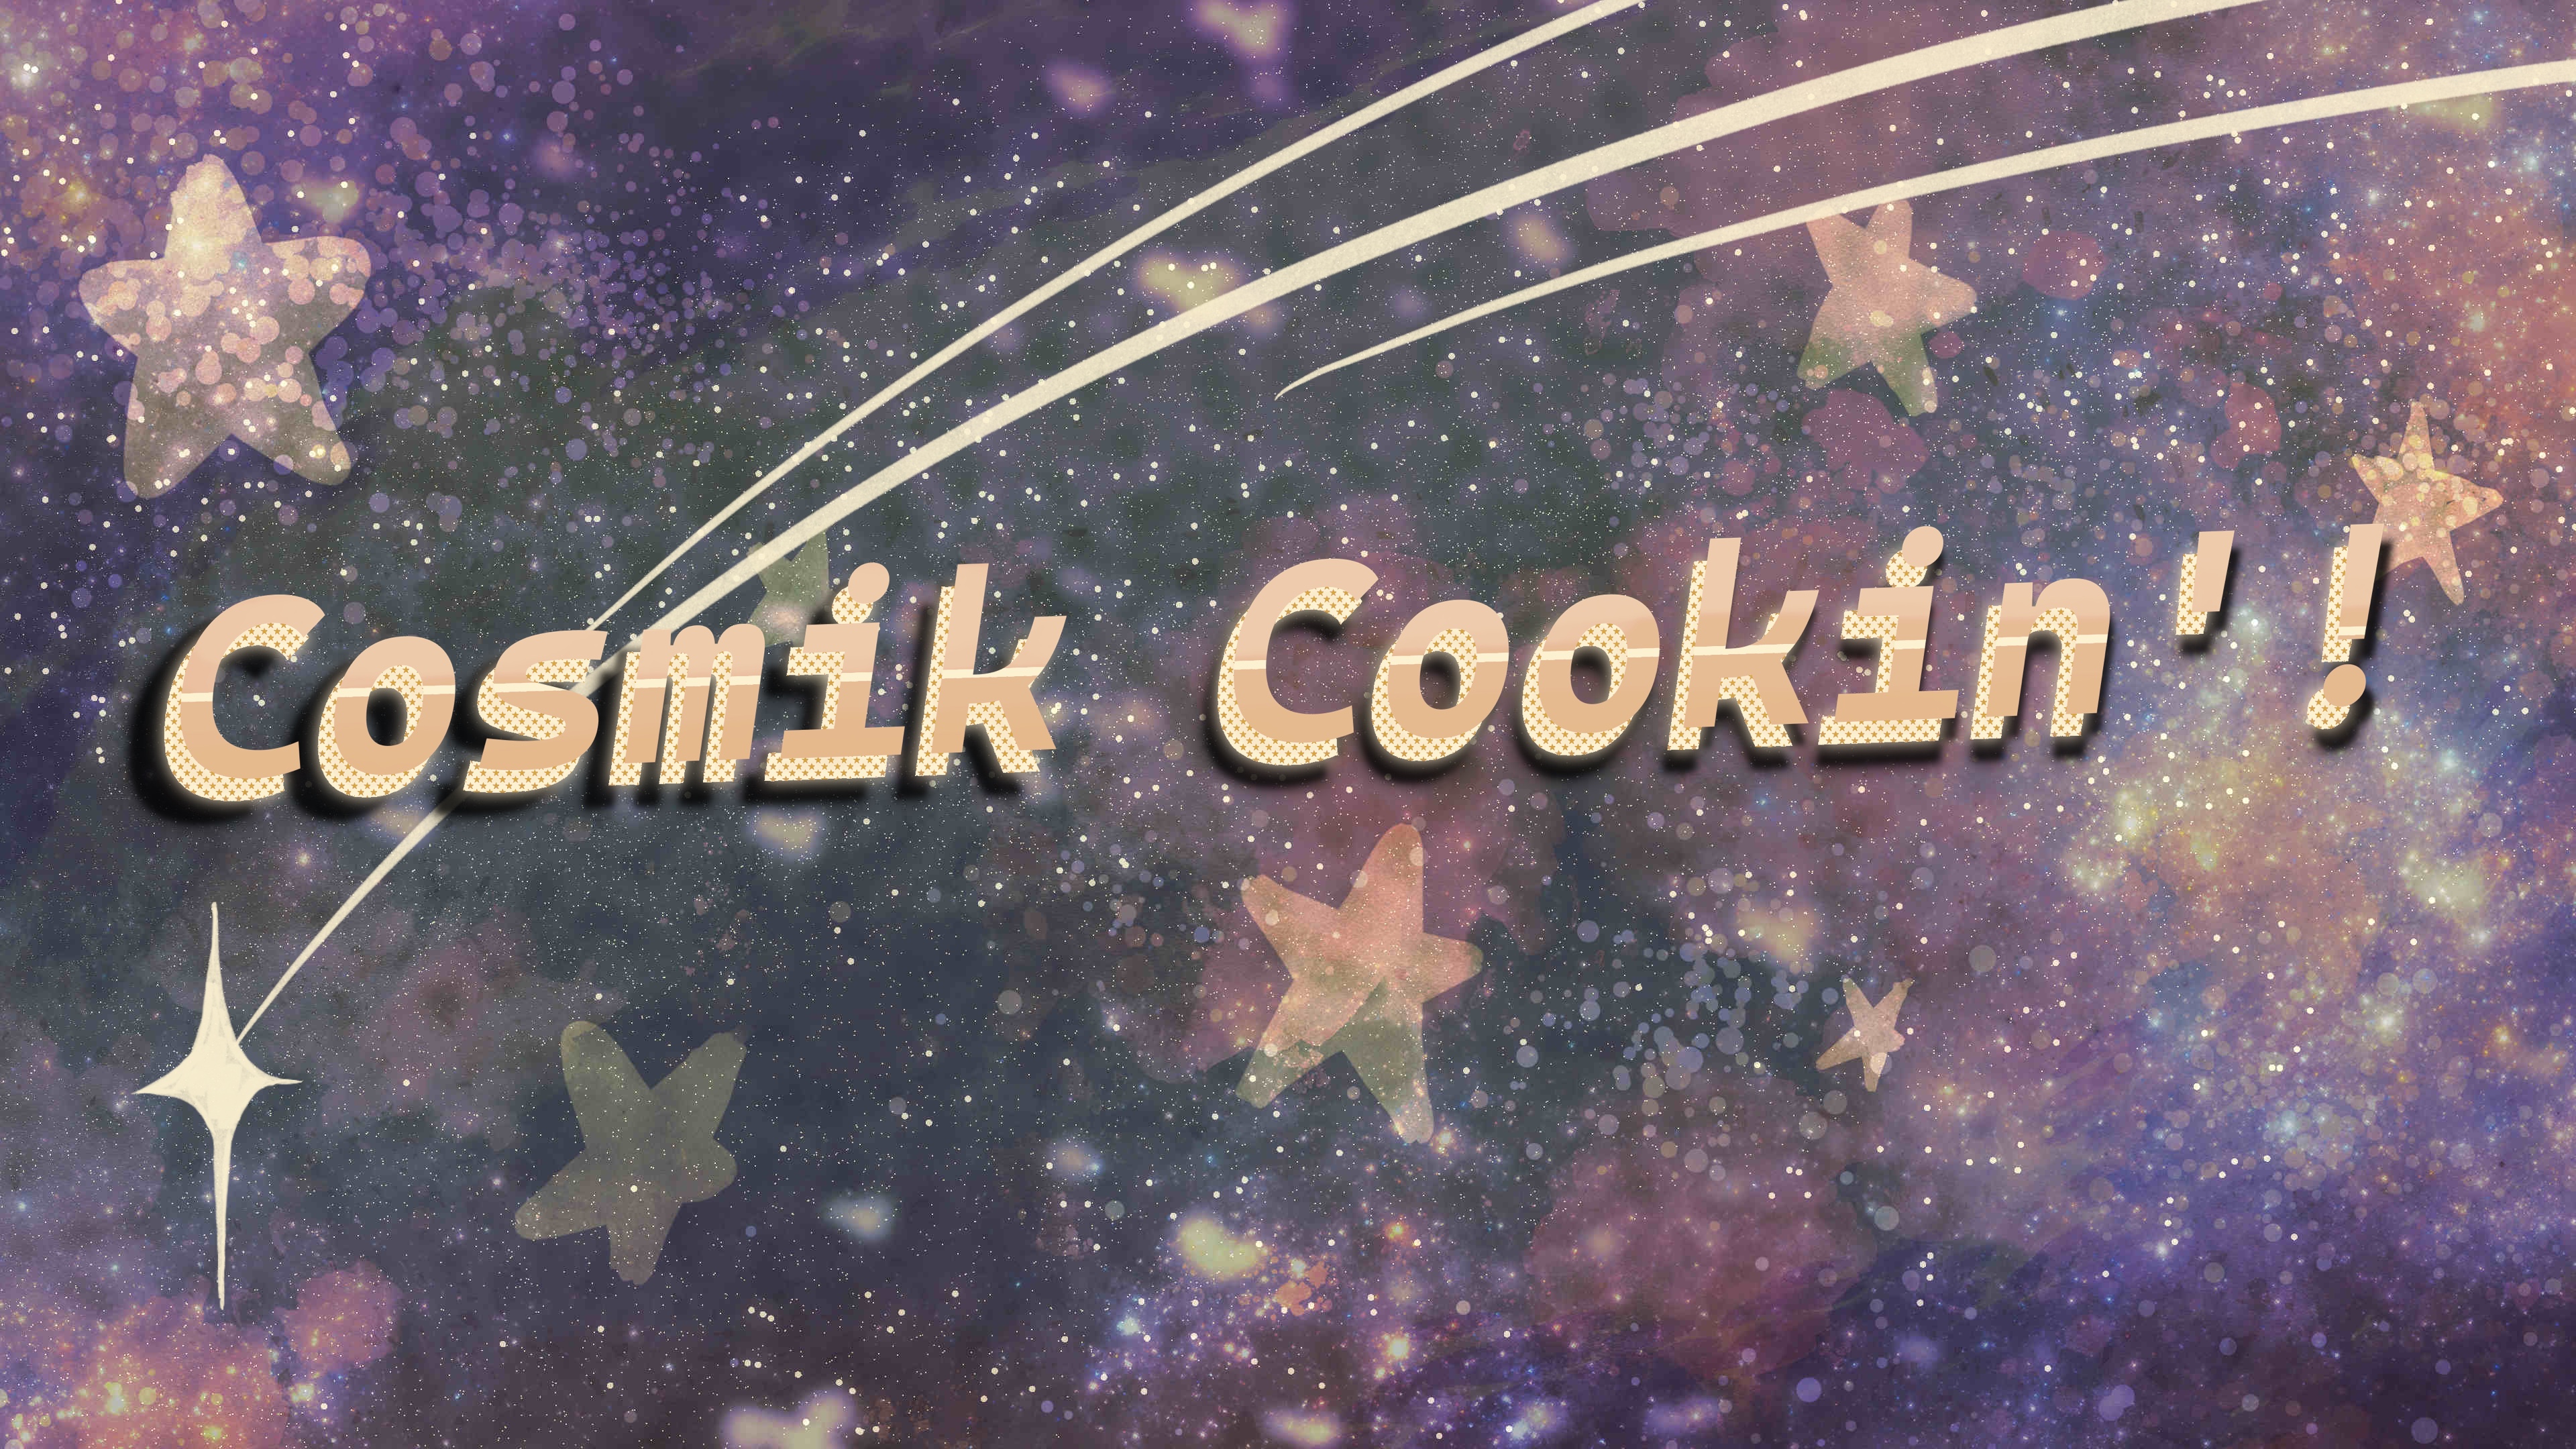 Cosmik Cookin'!